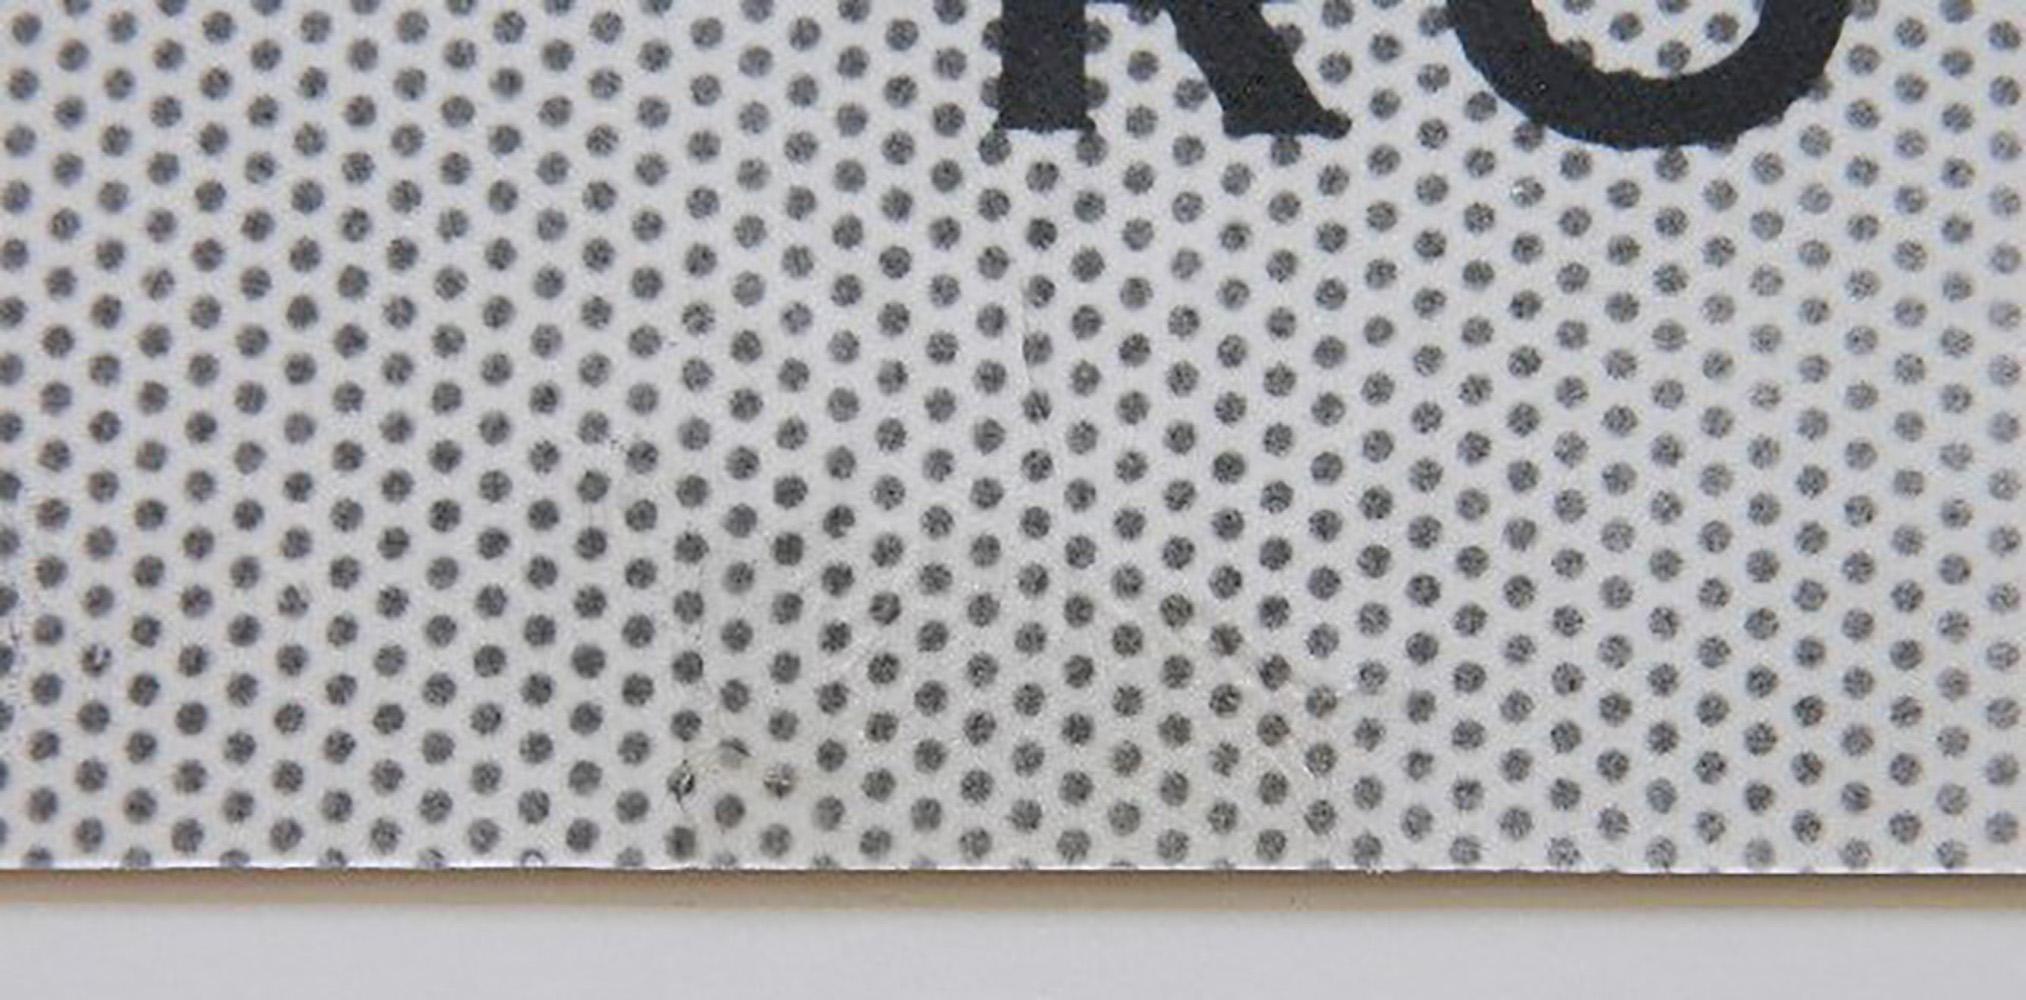 Roy Lichtenstein
Gallery 26 Ausstellungsplakat, 1950
Offset-Lithografie-Poster (auf Karton aufgezogen)
10 1/2 × 31 Zoll
Ungerahmt
Dieses äußerst seltene Plakat/Faltblatt ist eine Werbung für Roy Lichtensteins Ausstellung in der Gallery 26 des